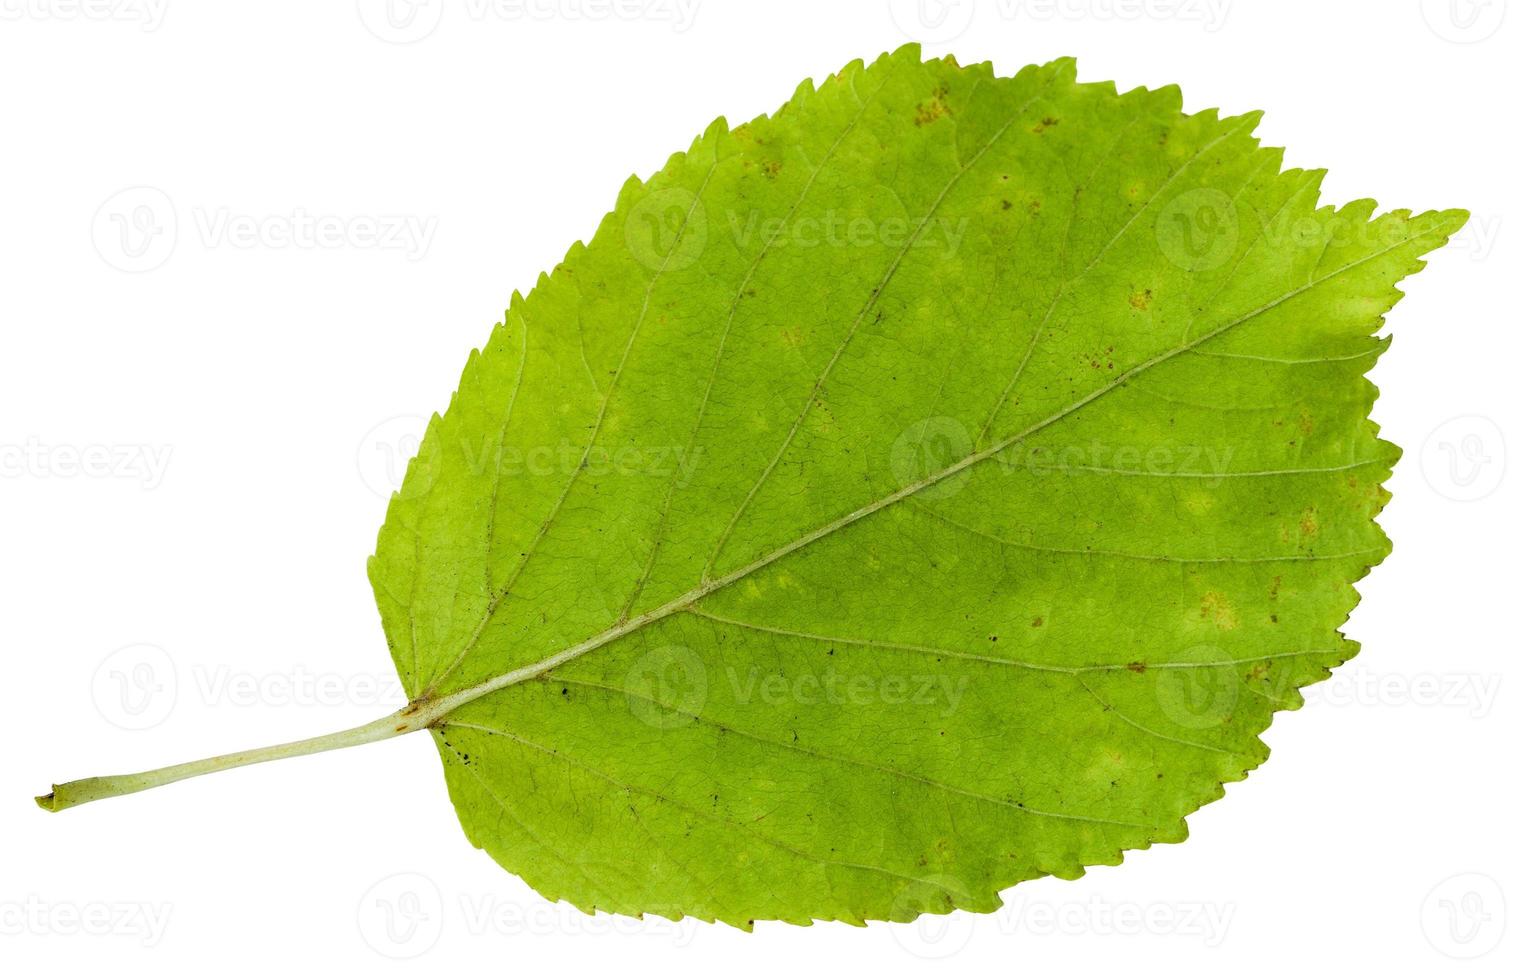 verso da folha verde da árvore de bordo com folhas de freixo foto